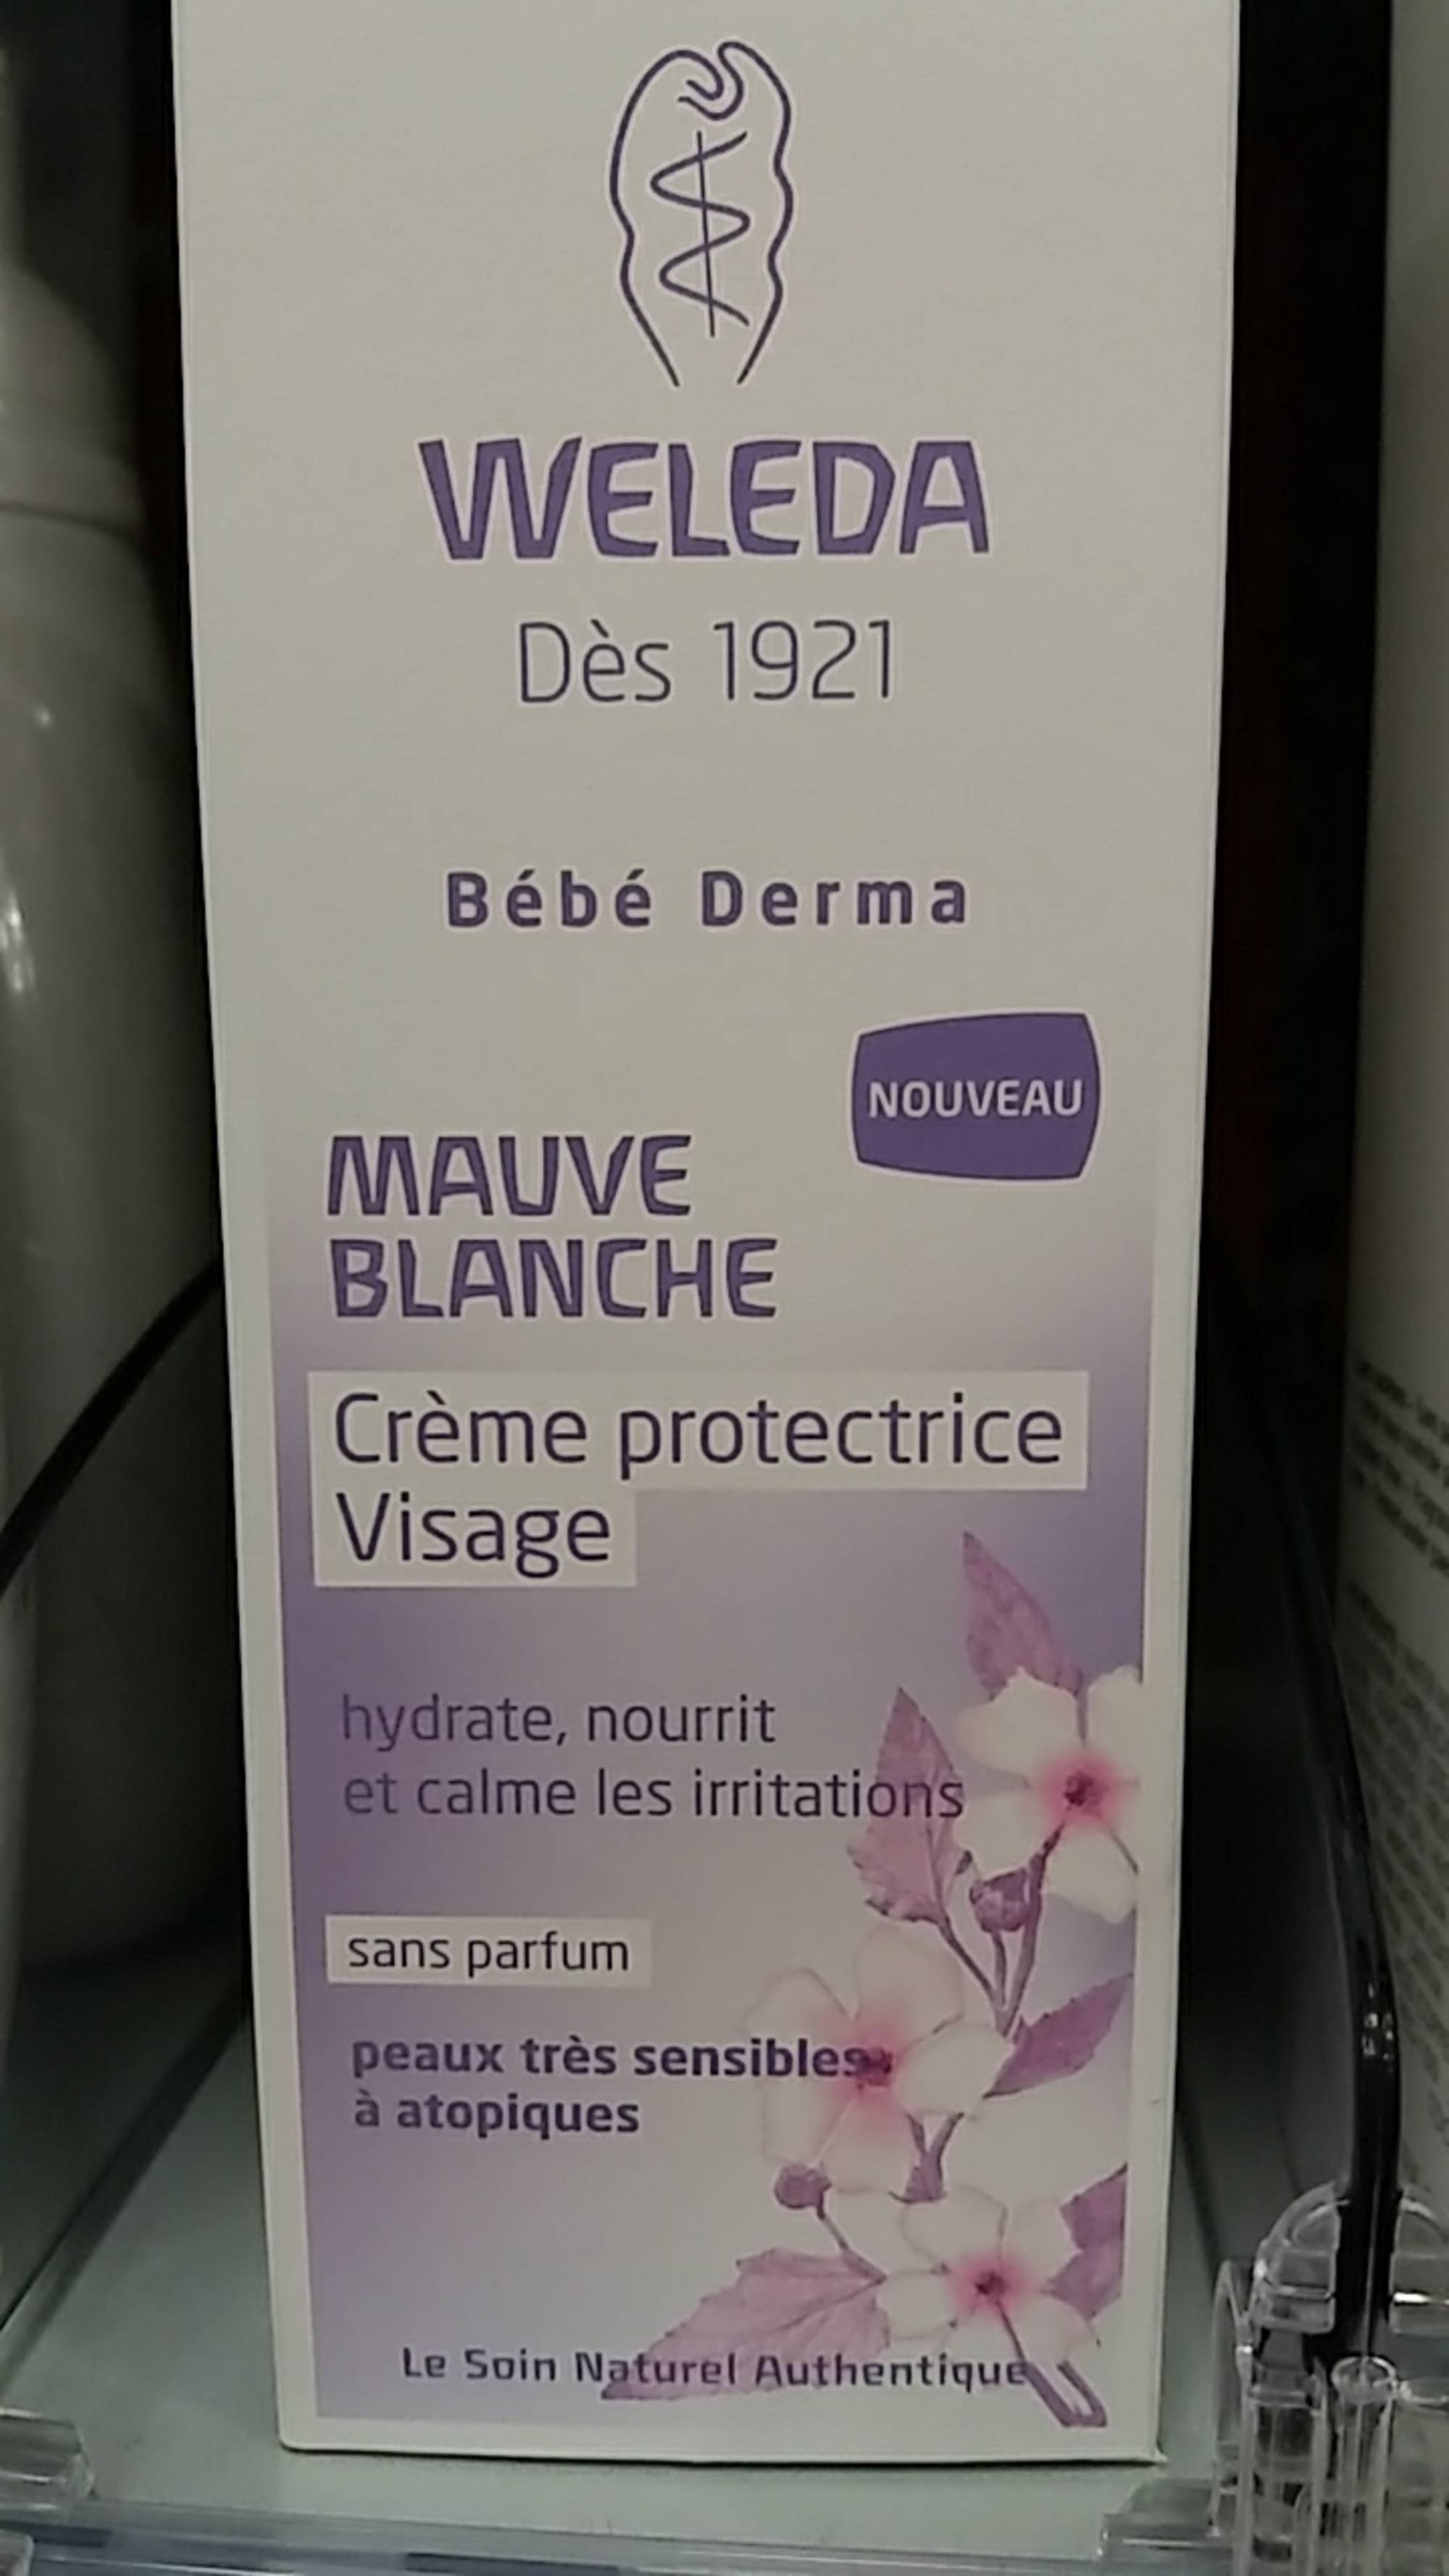 WELEDA - Bébé Derma - Crème protectrice visage à la mauve blanche